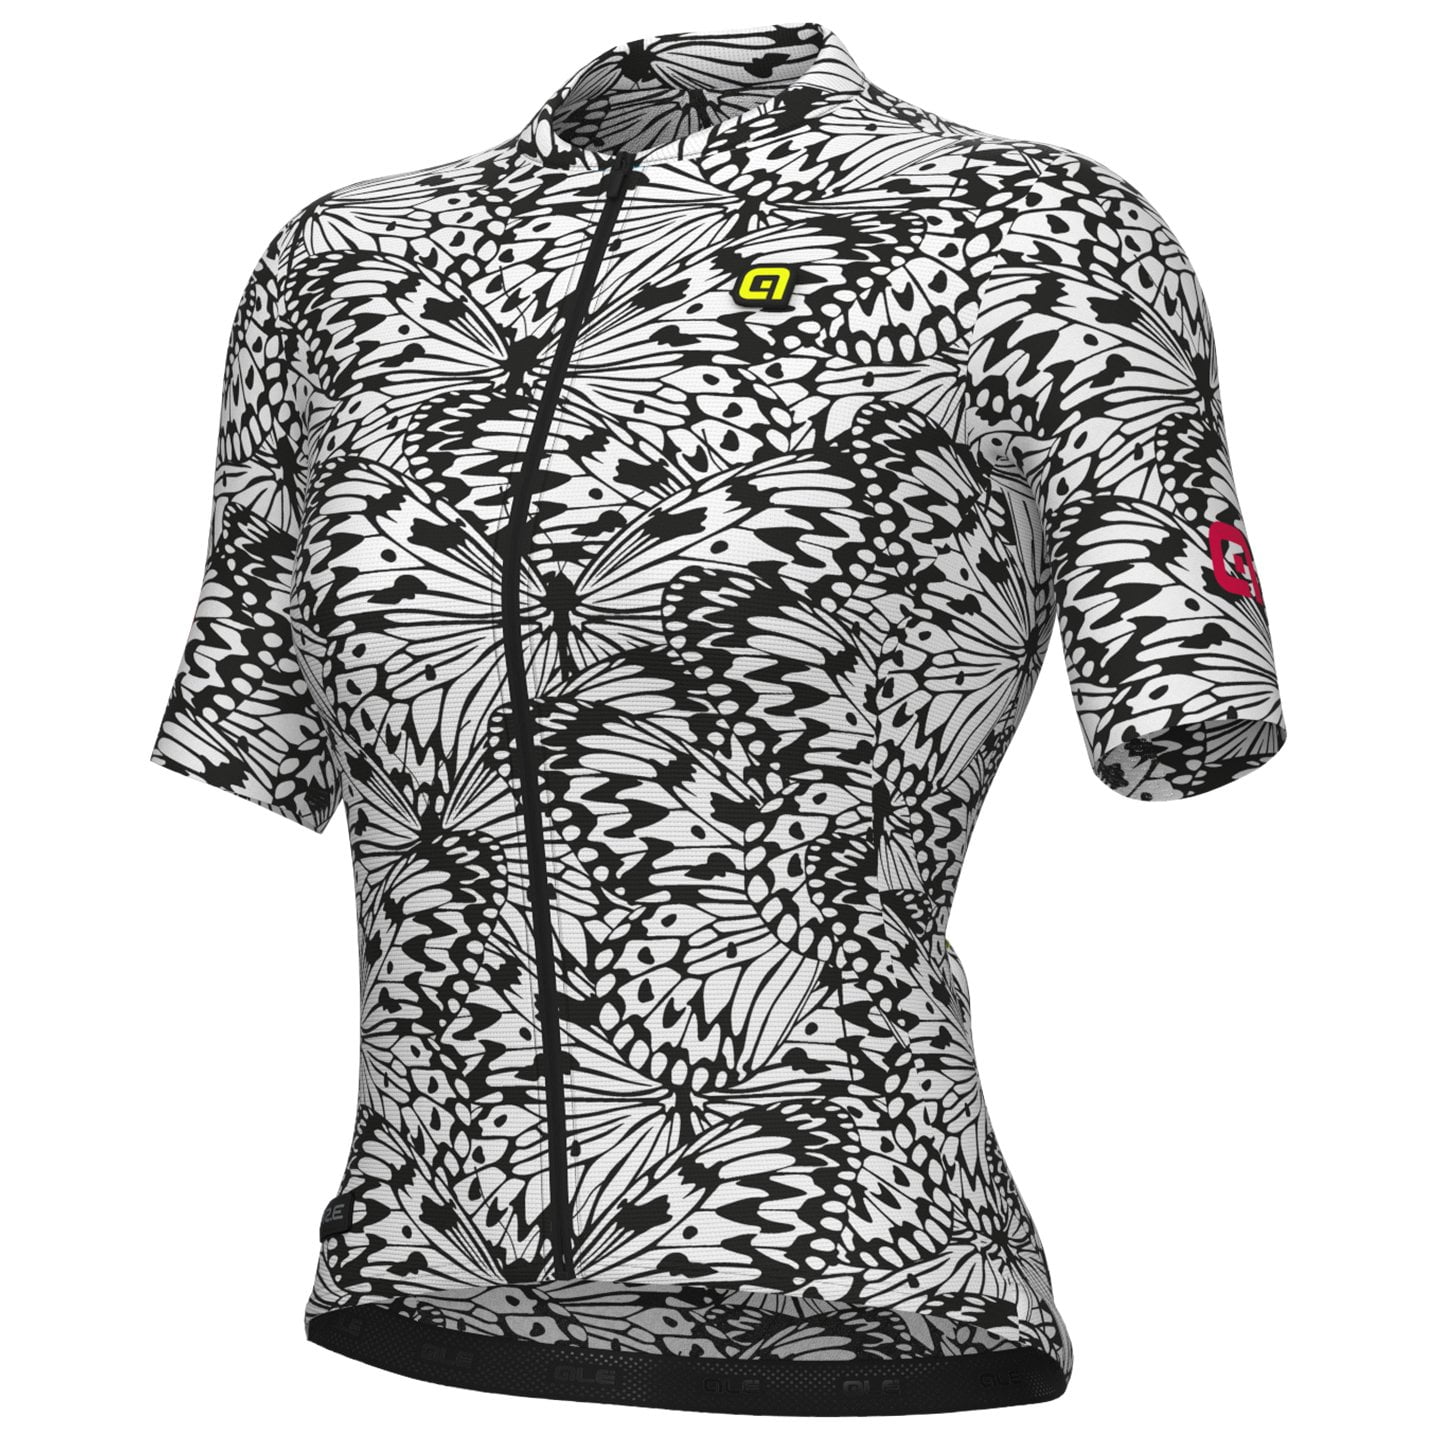 ALE Papillon Women’s Jersey Women’s Short Sleeve Jersey, size XL, Cycle jersey, Bike gear